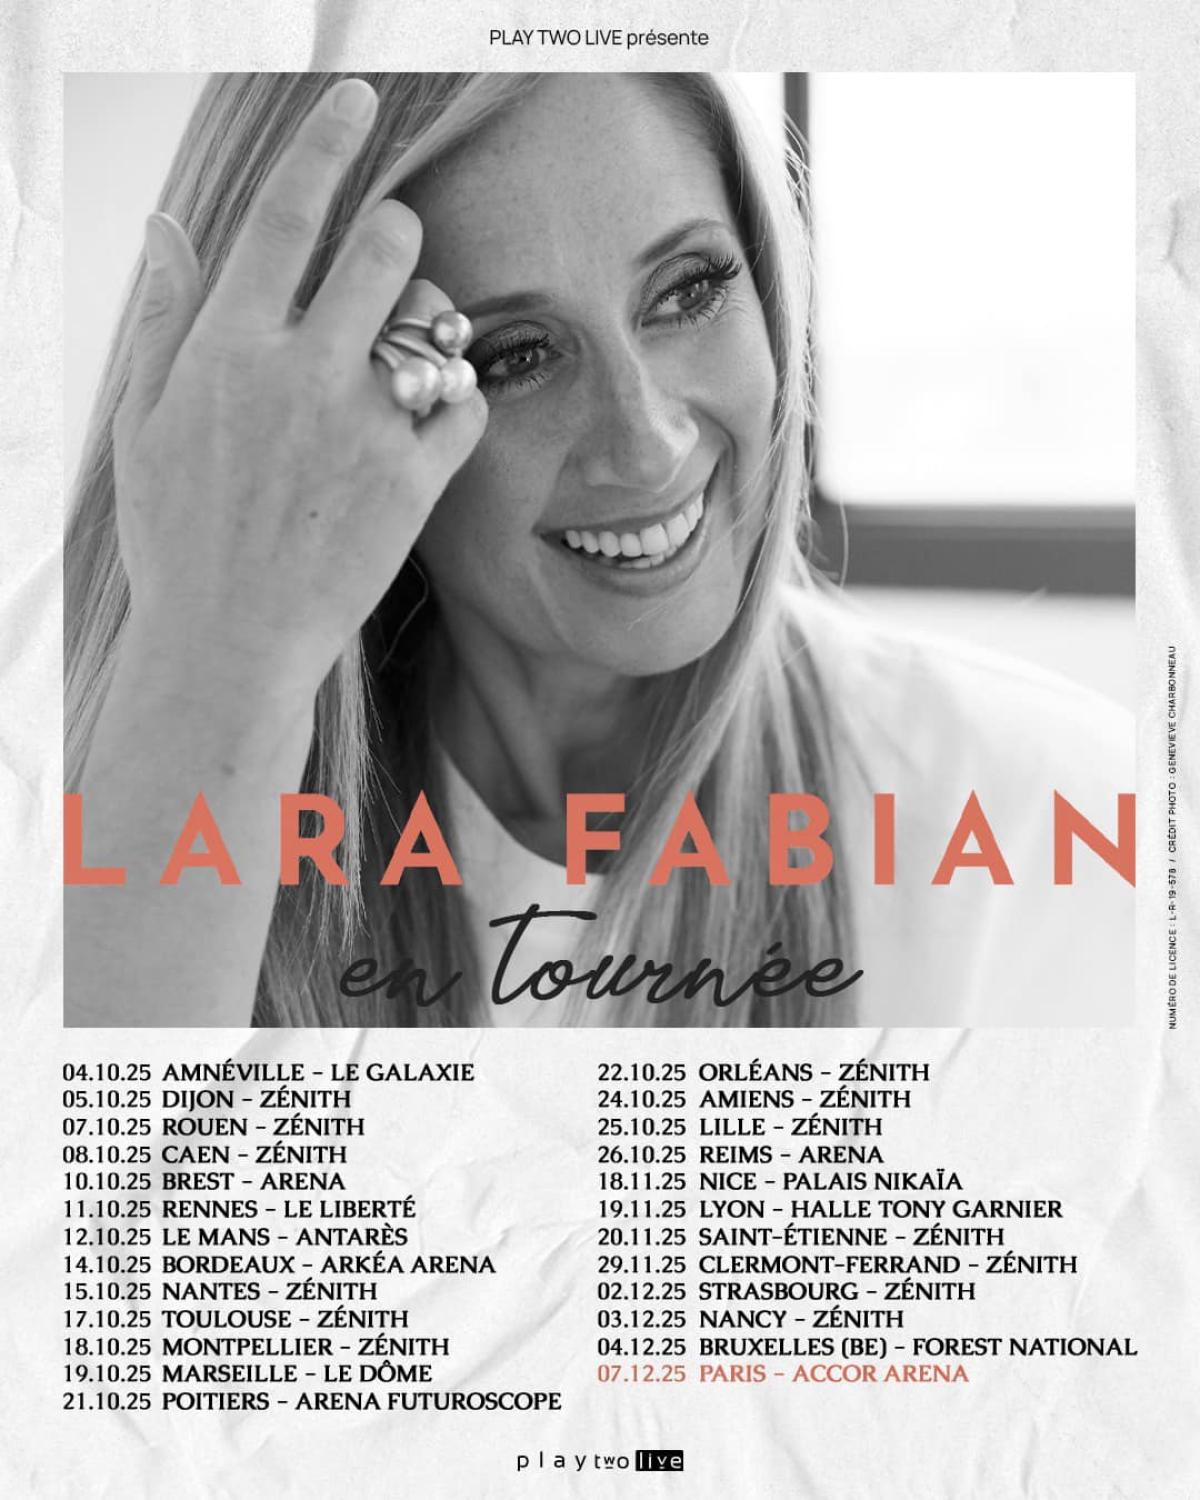 Lara Fabian at Halle Tony Garnier Tickets